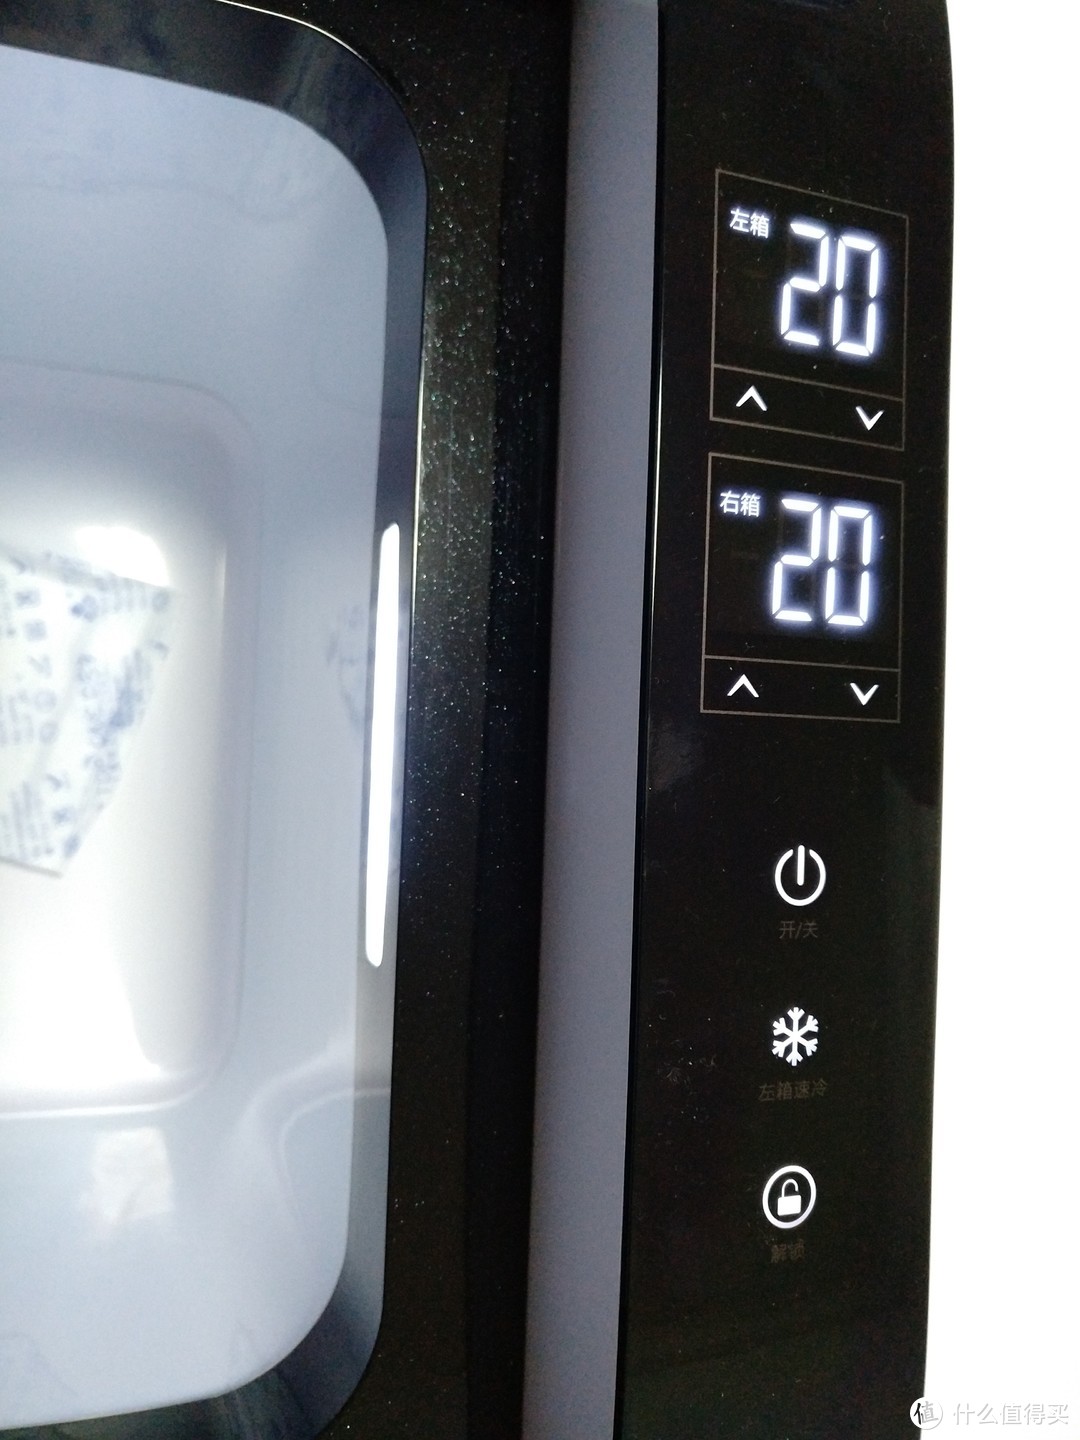 手动设定左右箱的温度，注意右箱温度要低于左箱